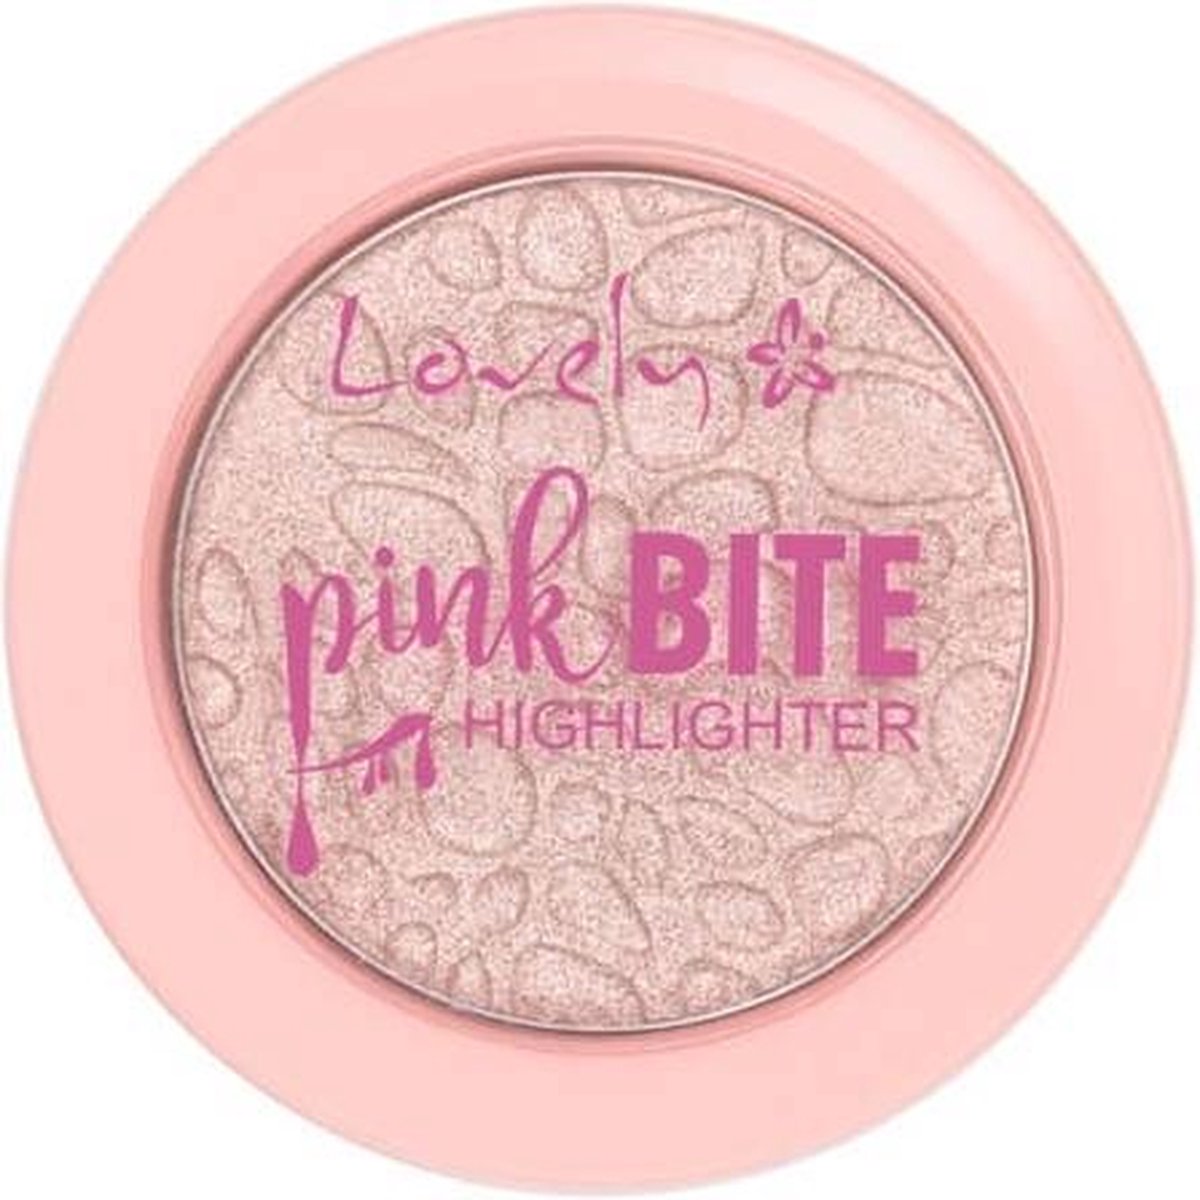 Lovely Highlighter Pink Bite